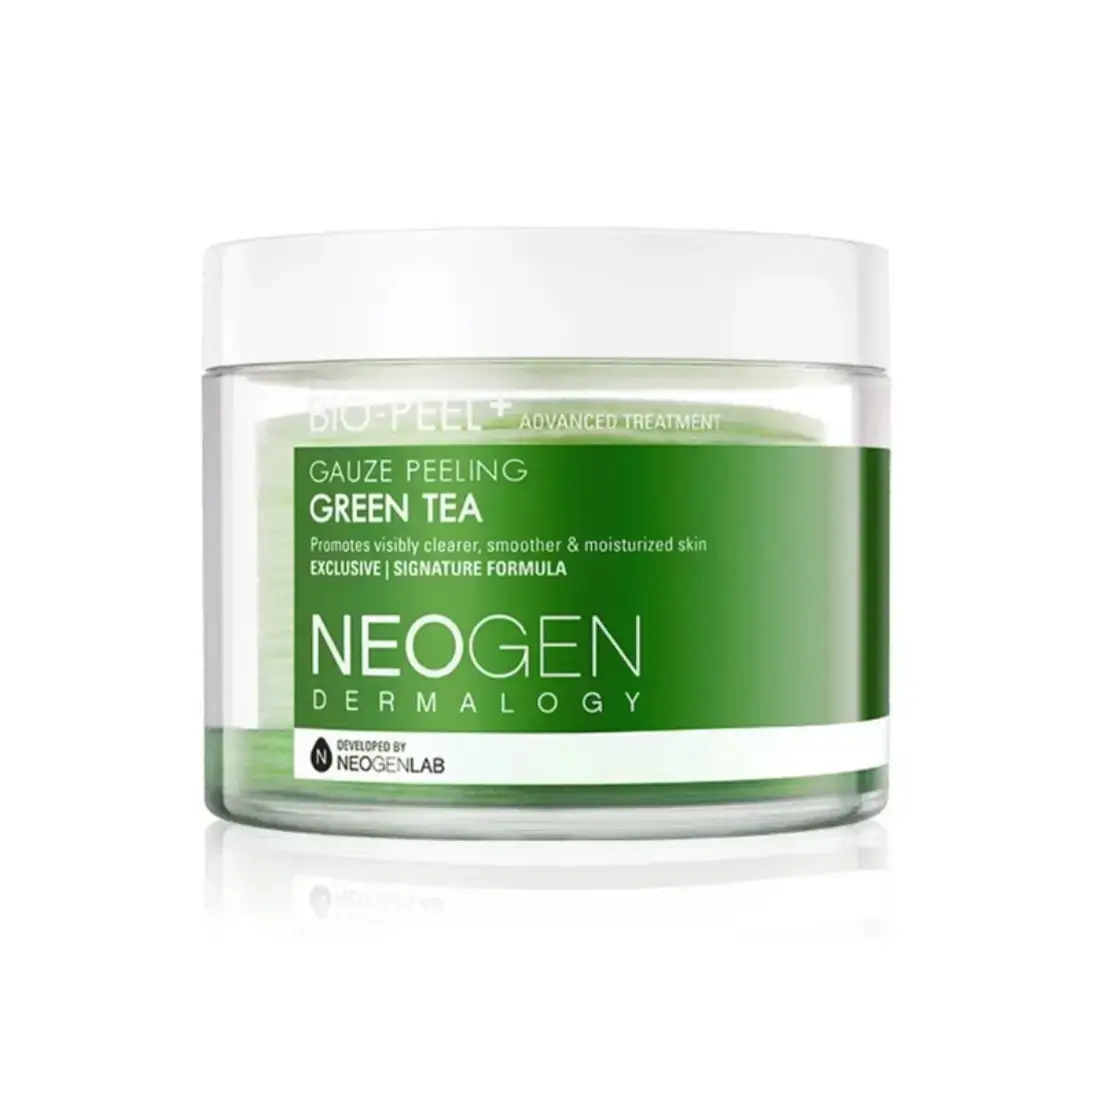 Best Korean skincare exfoliator- NEOGEN Bio-Peel Gauze Peeling- Green Tea​